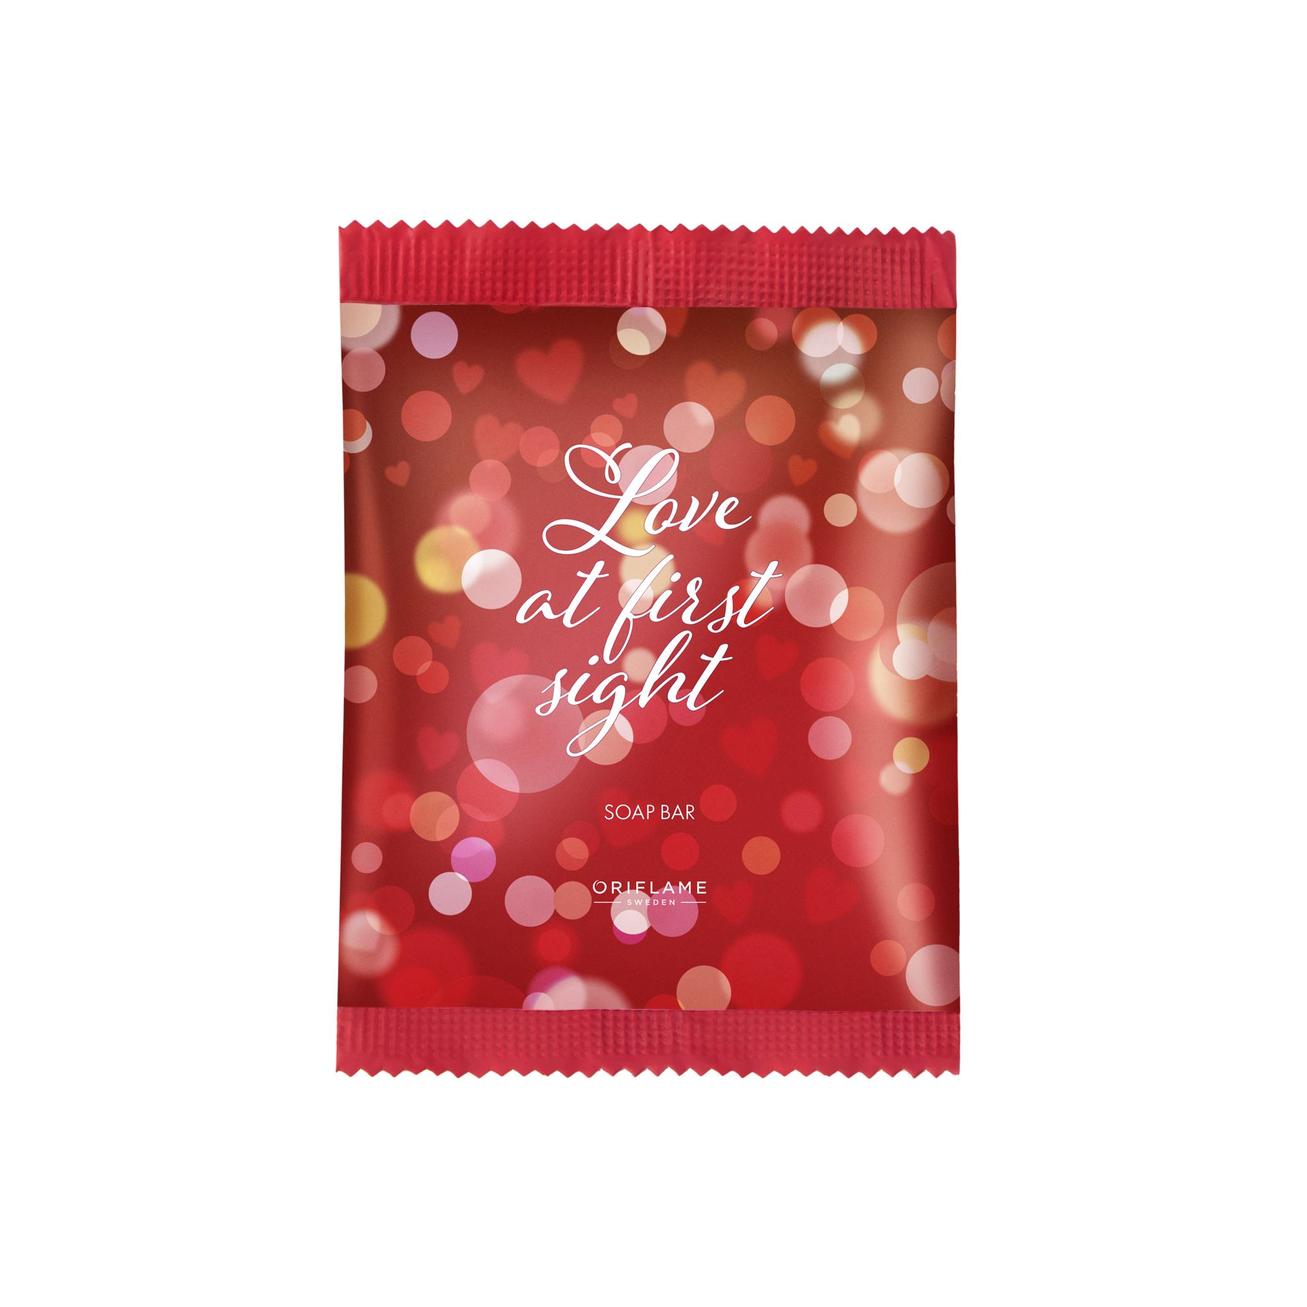 Προσφορά Σαπούνι Love At First Sight για 1,99€ σε ORIFLAME